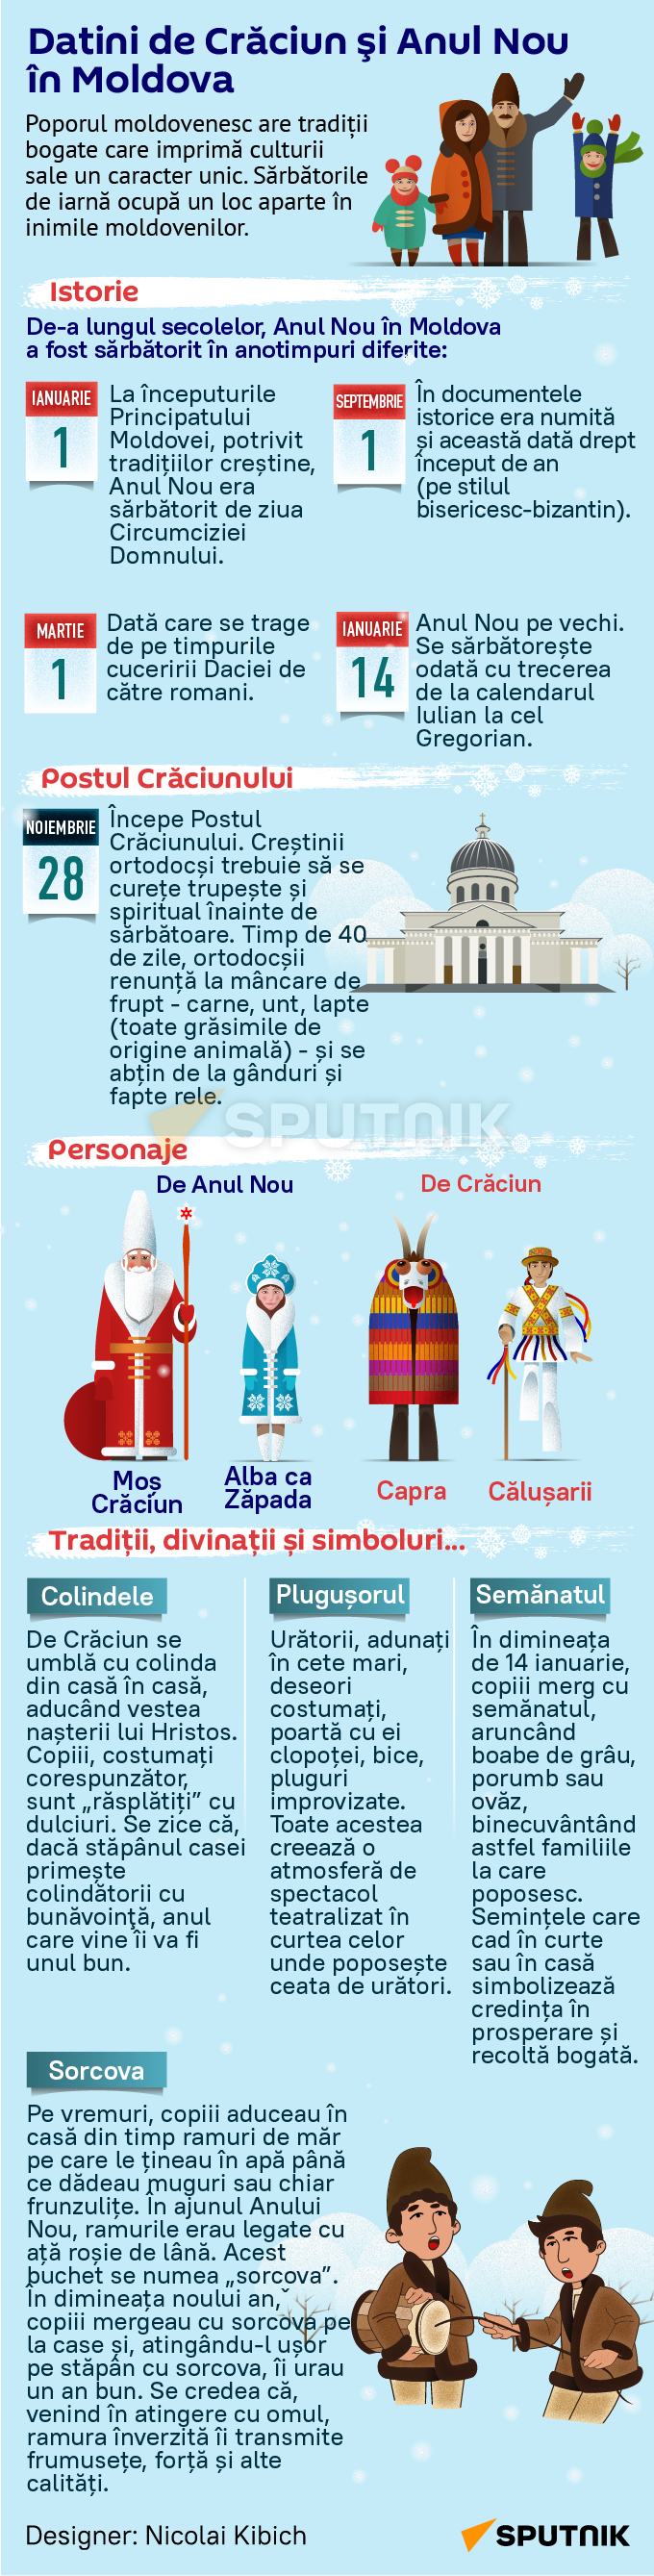 Datini de Crăciun şi Anul Nou în Moldova (MOB) - Sputnik Moldova